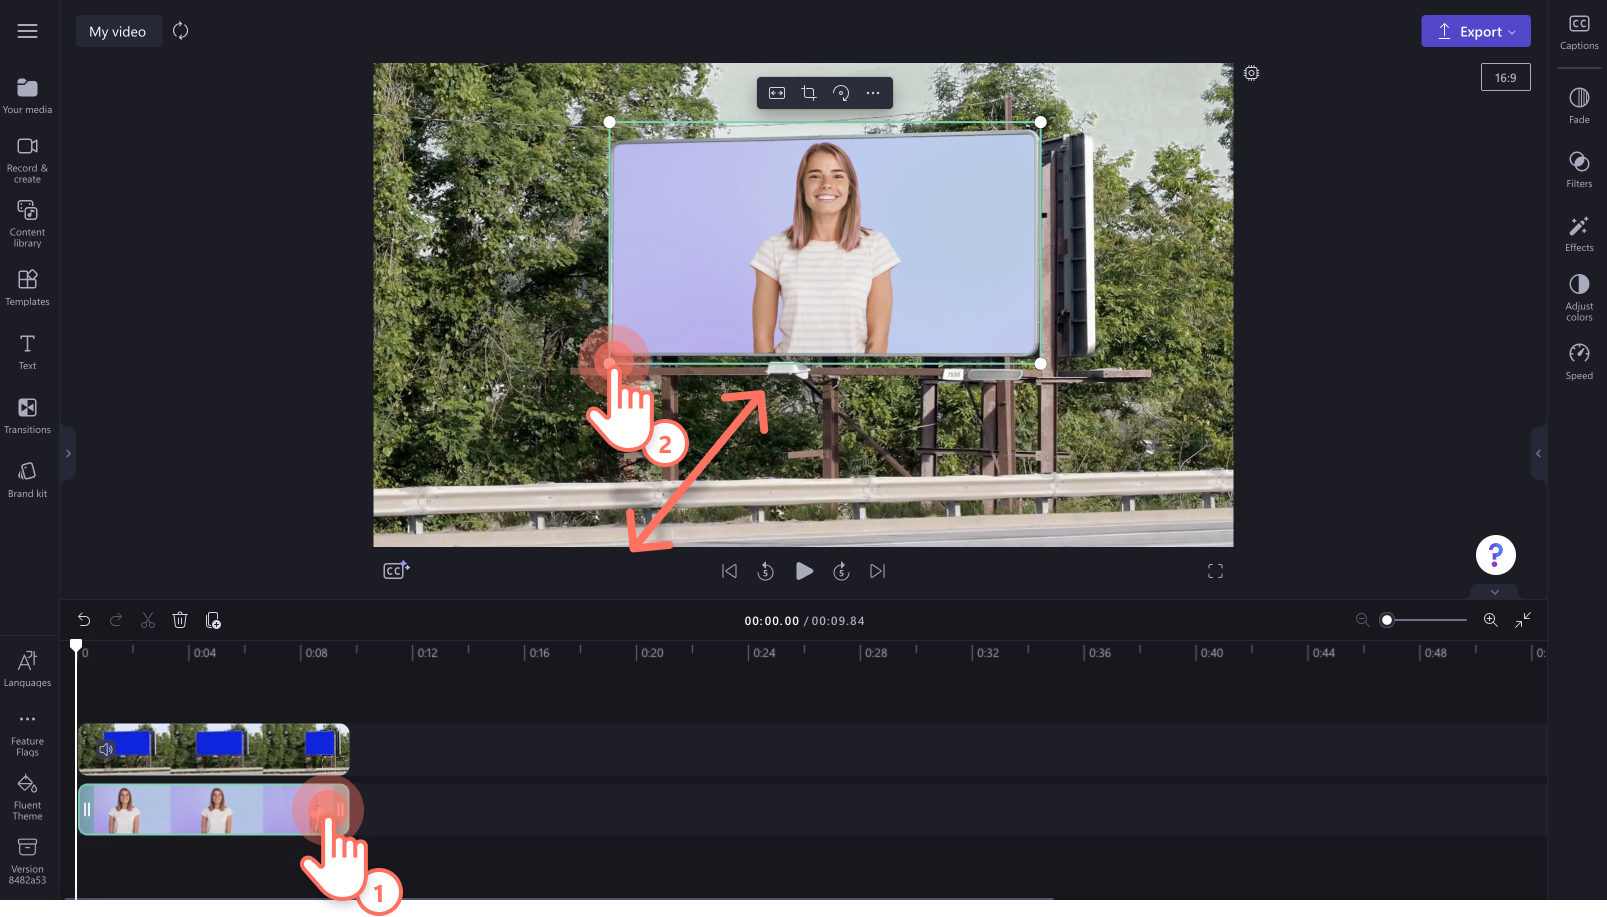 Hình ảnh người dùng đang chỉnh sửa kích cỡ video bằng các góc chỉnh sửa trên bản xem trước video.